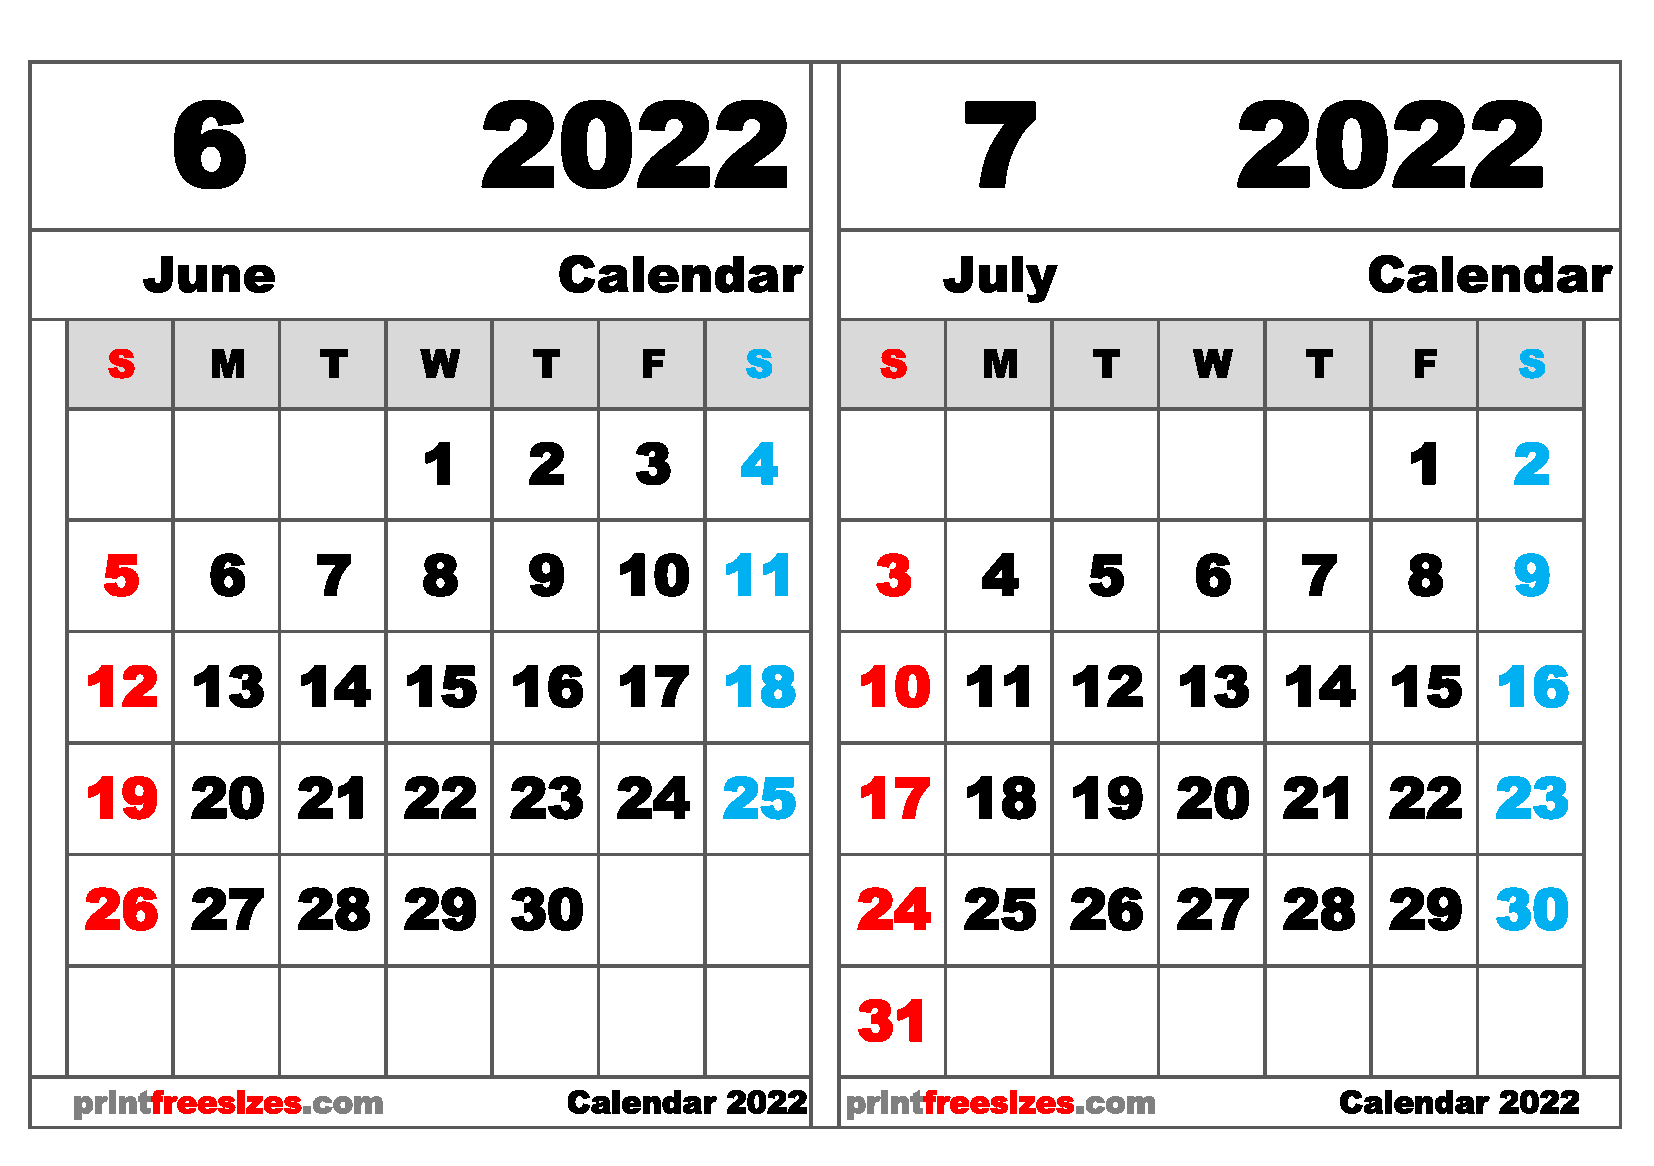 Get July 31 2022 Calendar